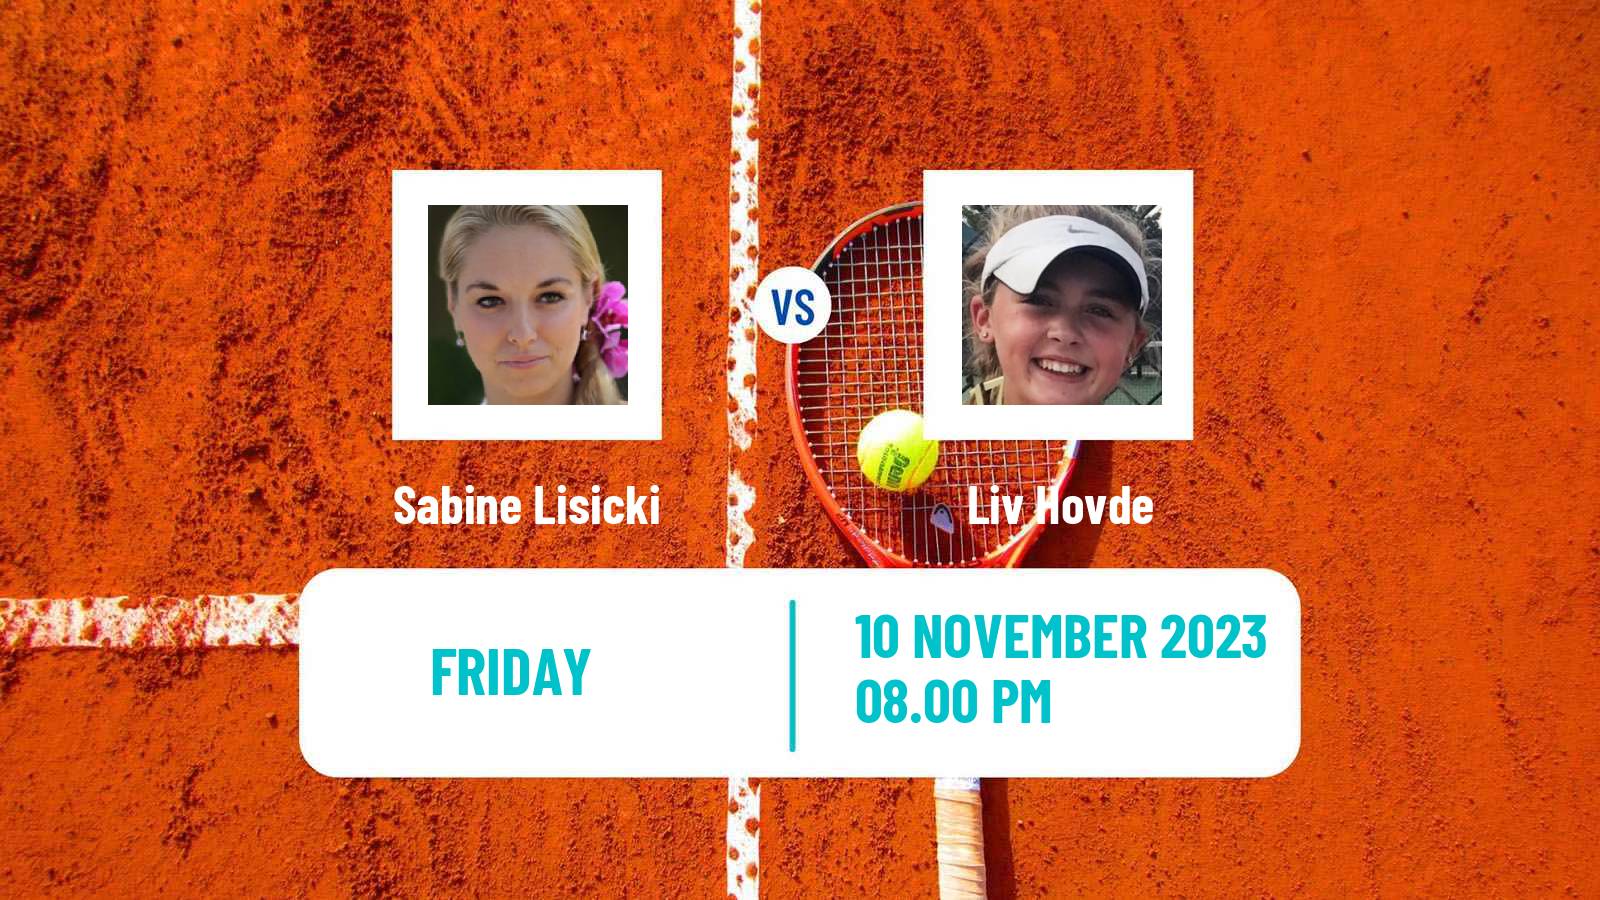 Tennis ITF W60 H Calgary Women Sabine Lisicki - Liv Hovde